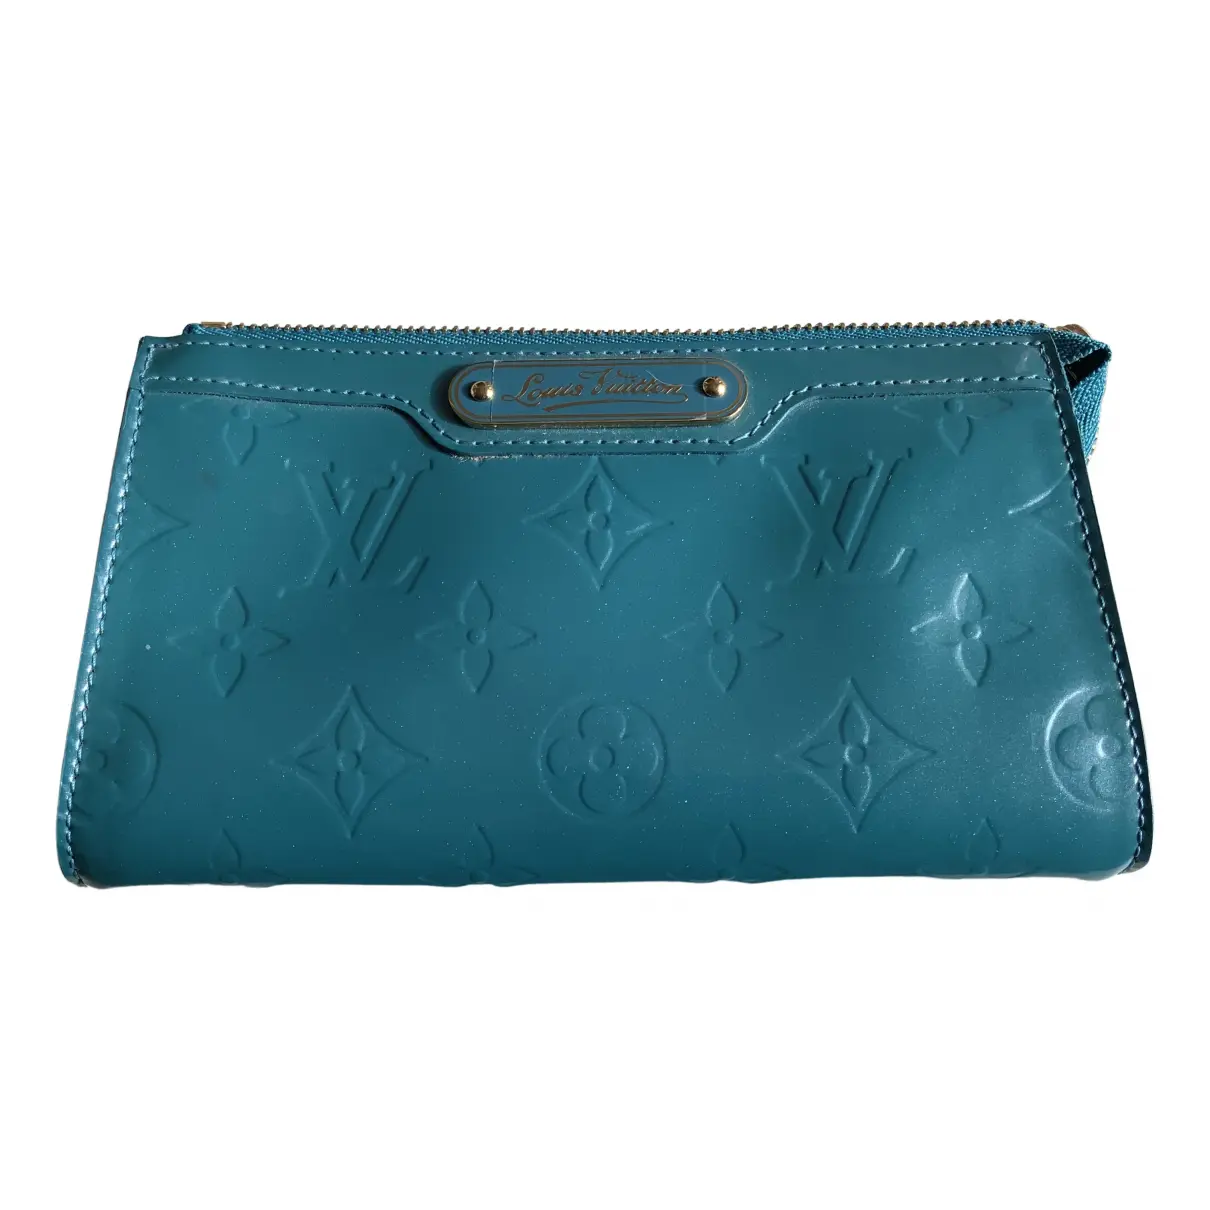 Patent leather clutch bag Louis Vuitton